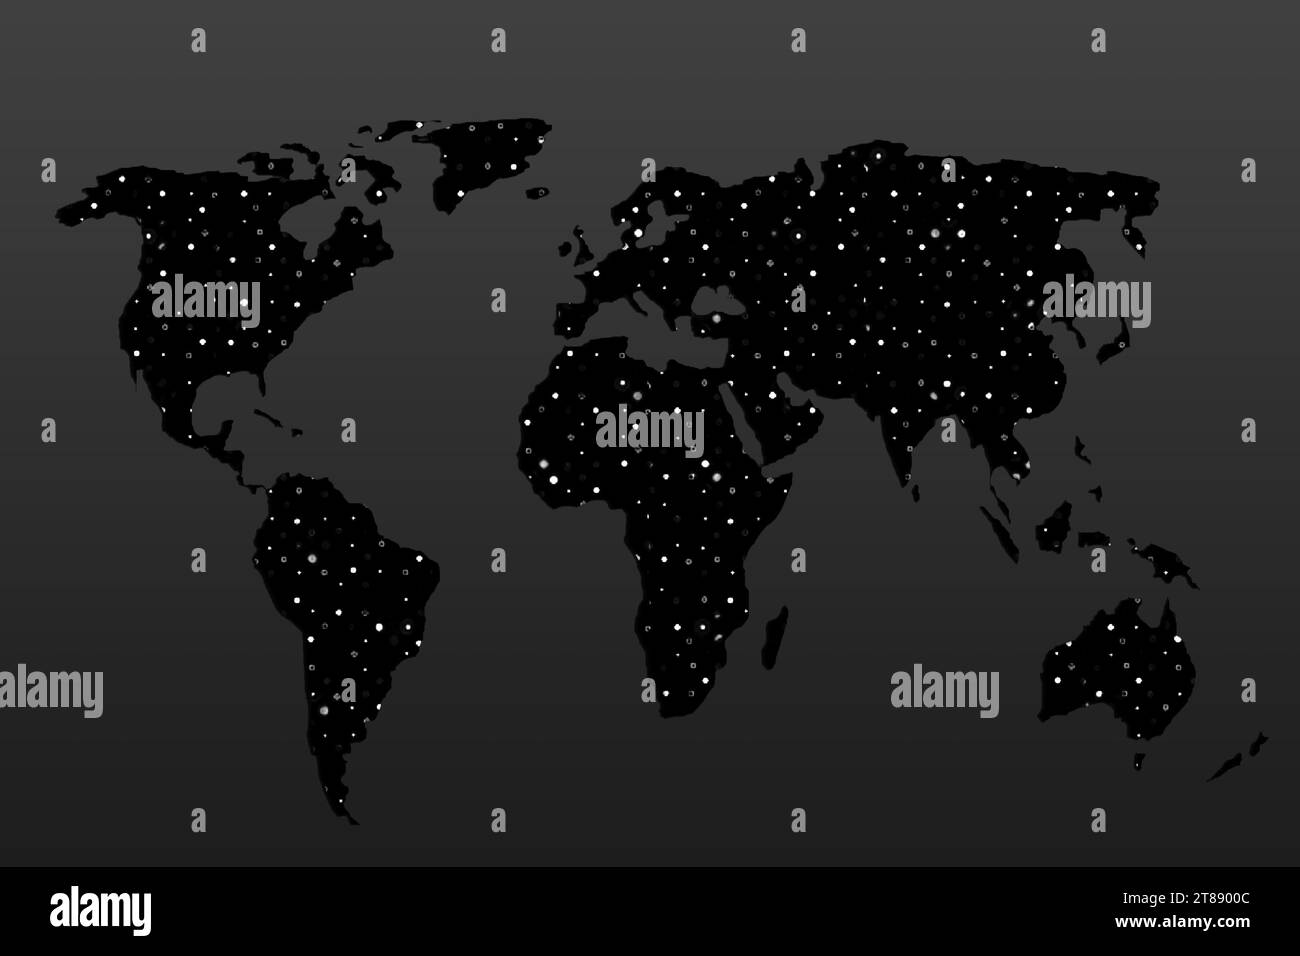 Conception de carte du monde. Terre avec continents. Carte de l'europe et de l'amérique, de l'Asie et de l'Australie. Modèle plat de carte de terre pour le modèle de site Web, rapport anual Banque D'Images